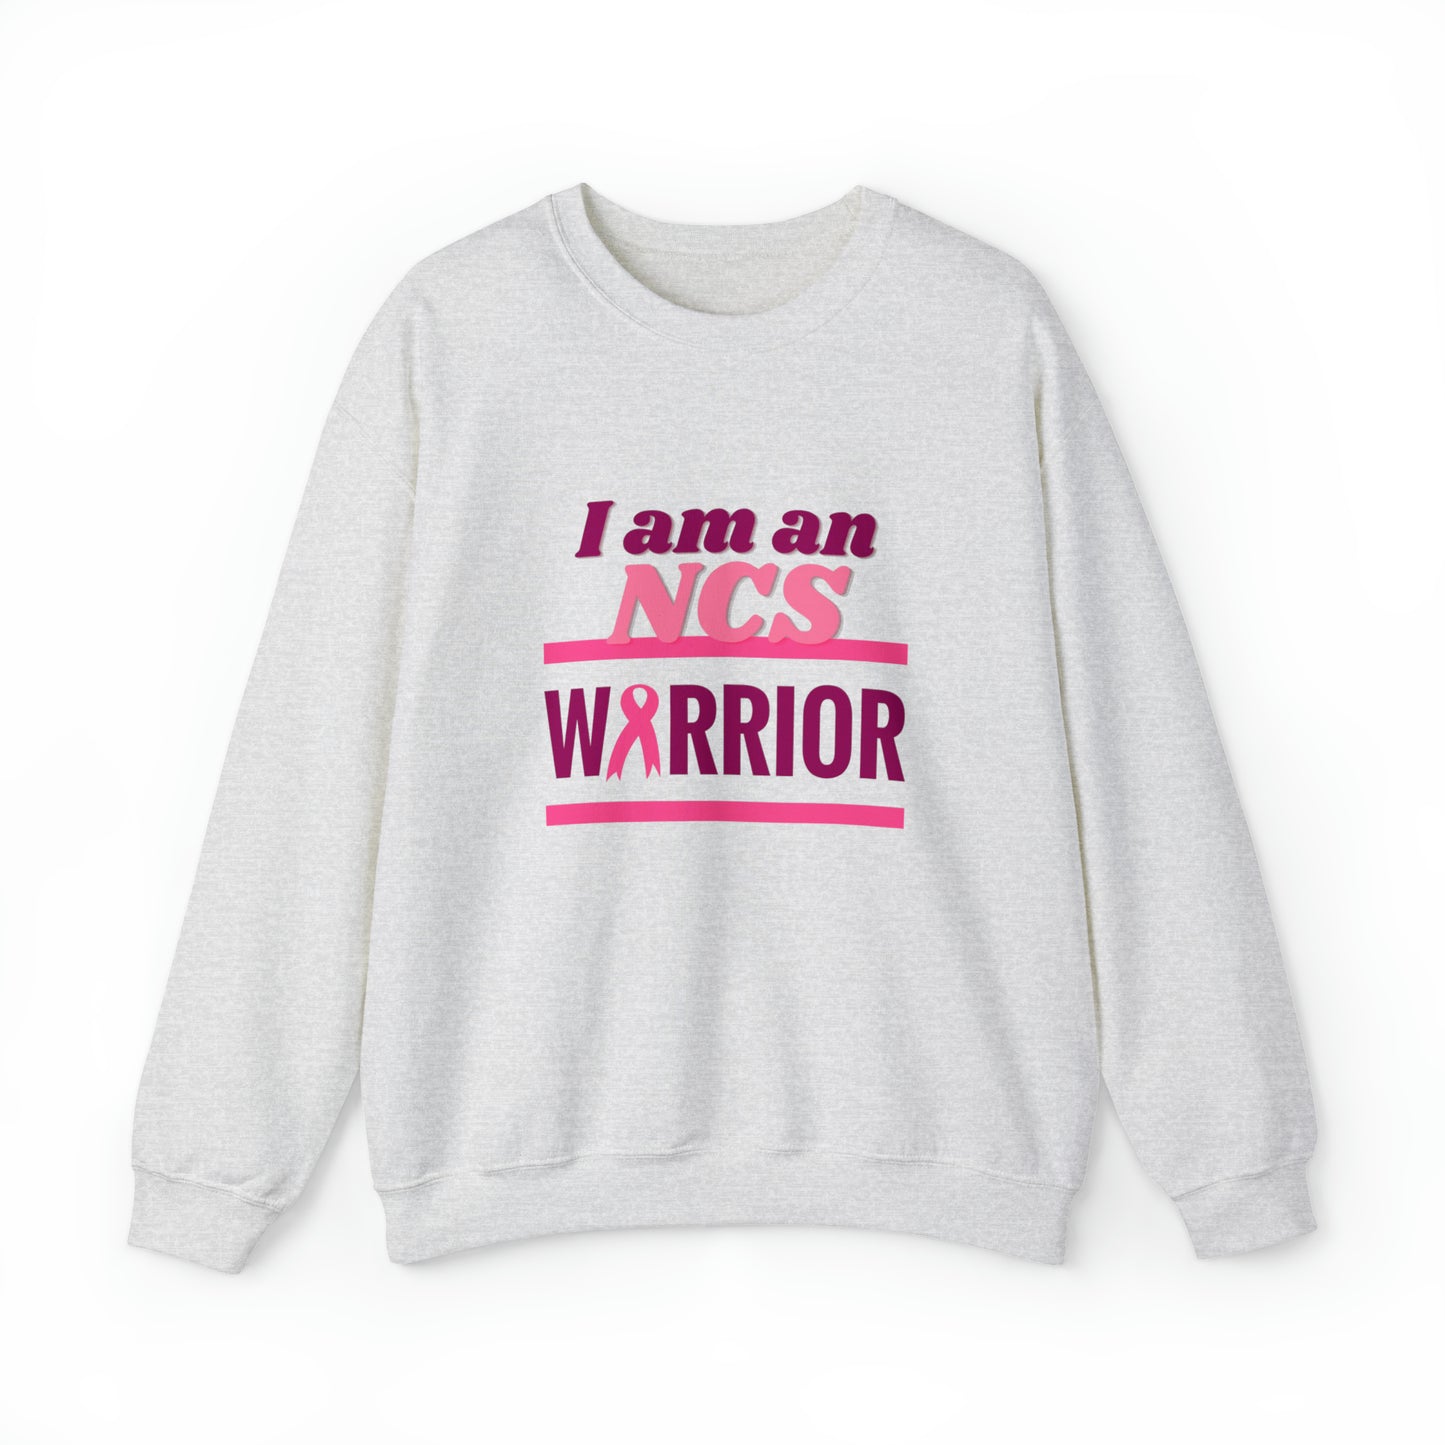 I am an NCS Warrior - Crewneck Sweatshirt